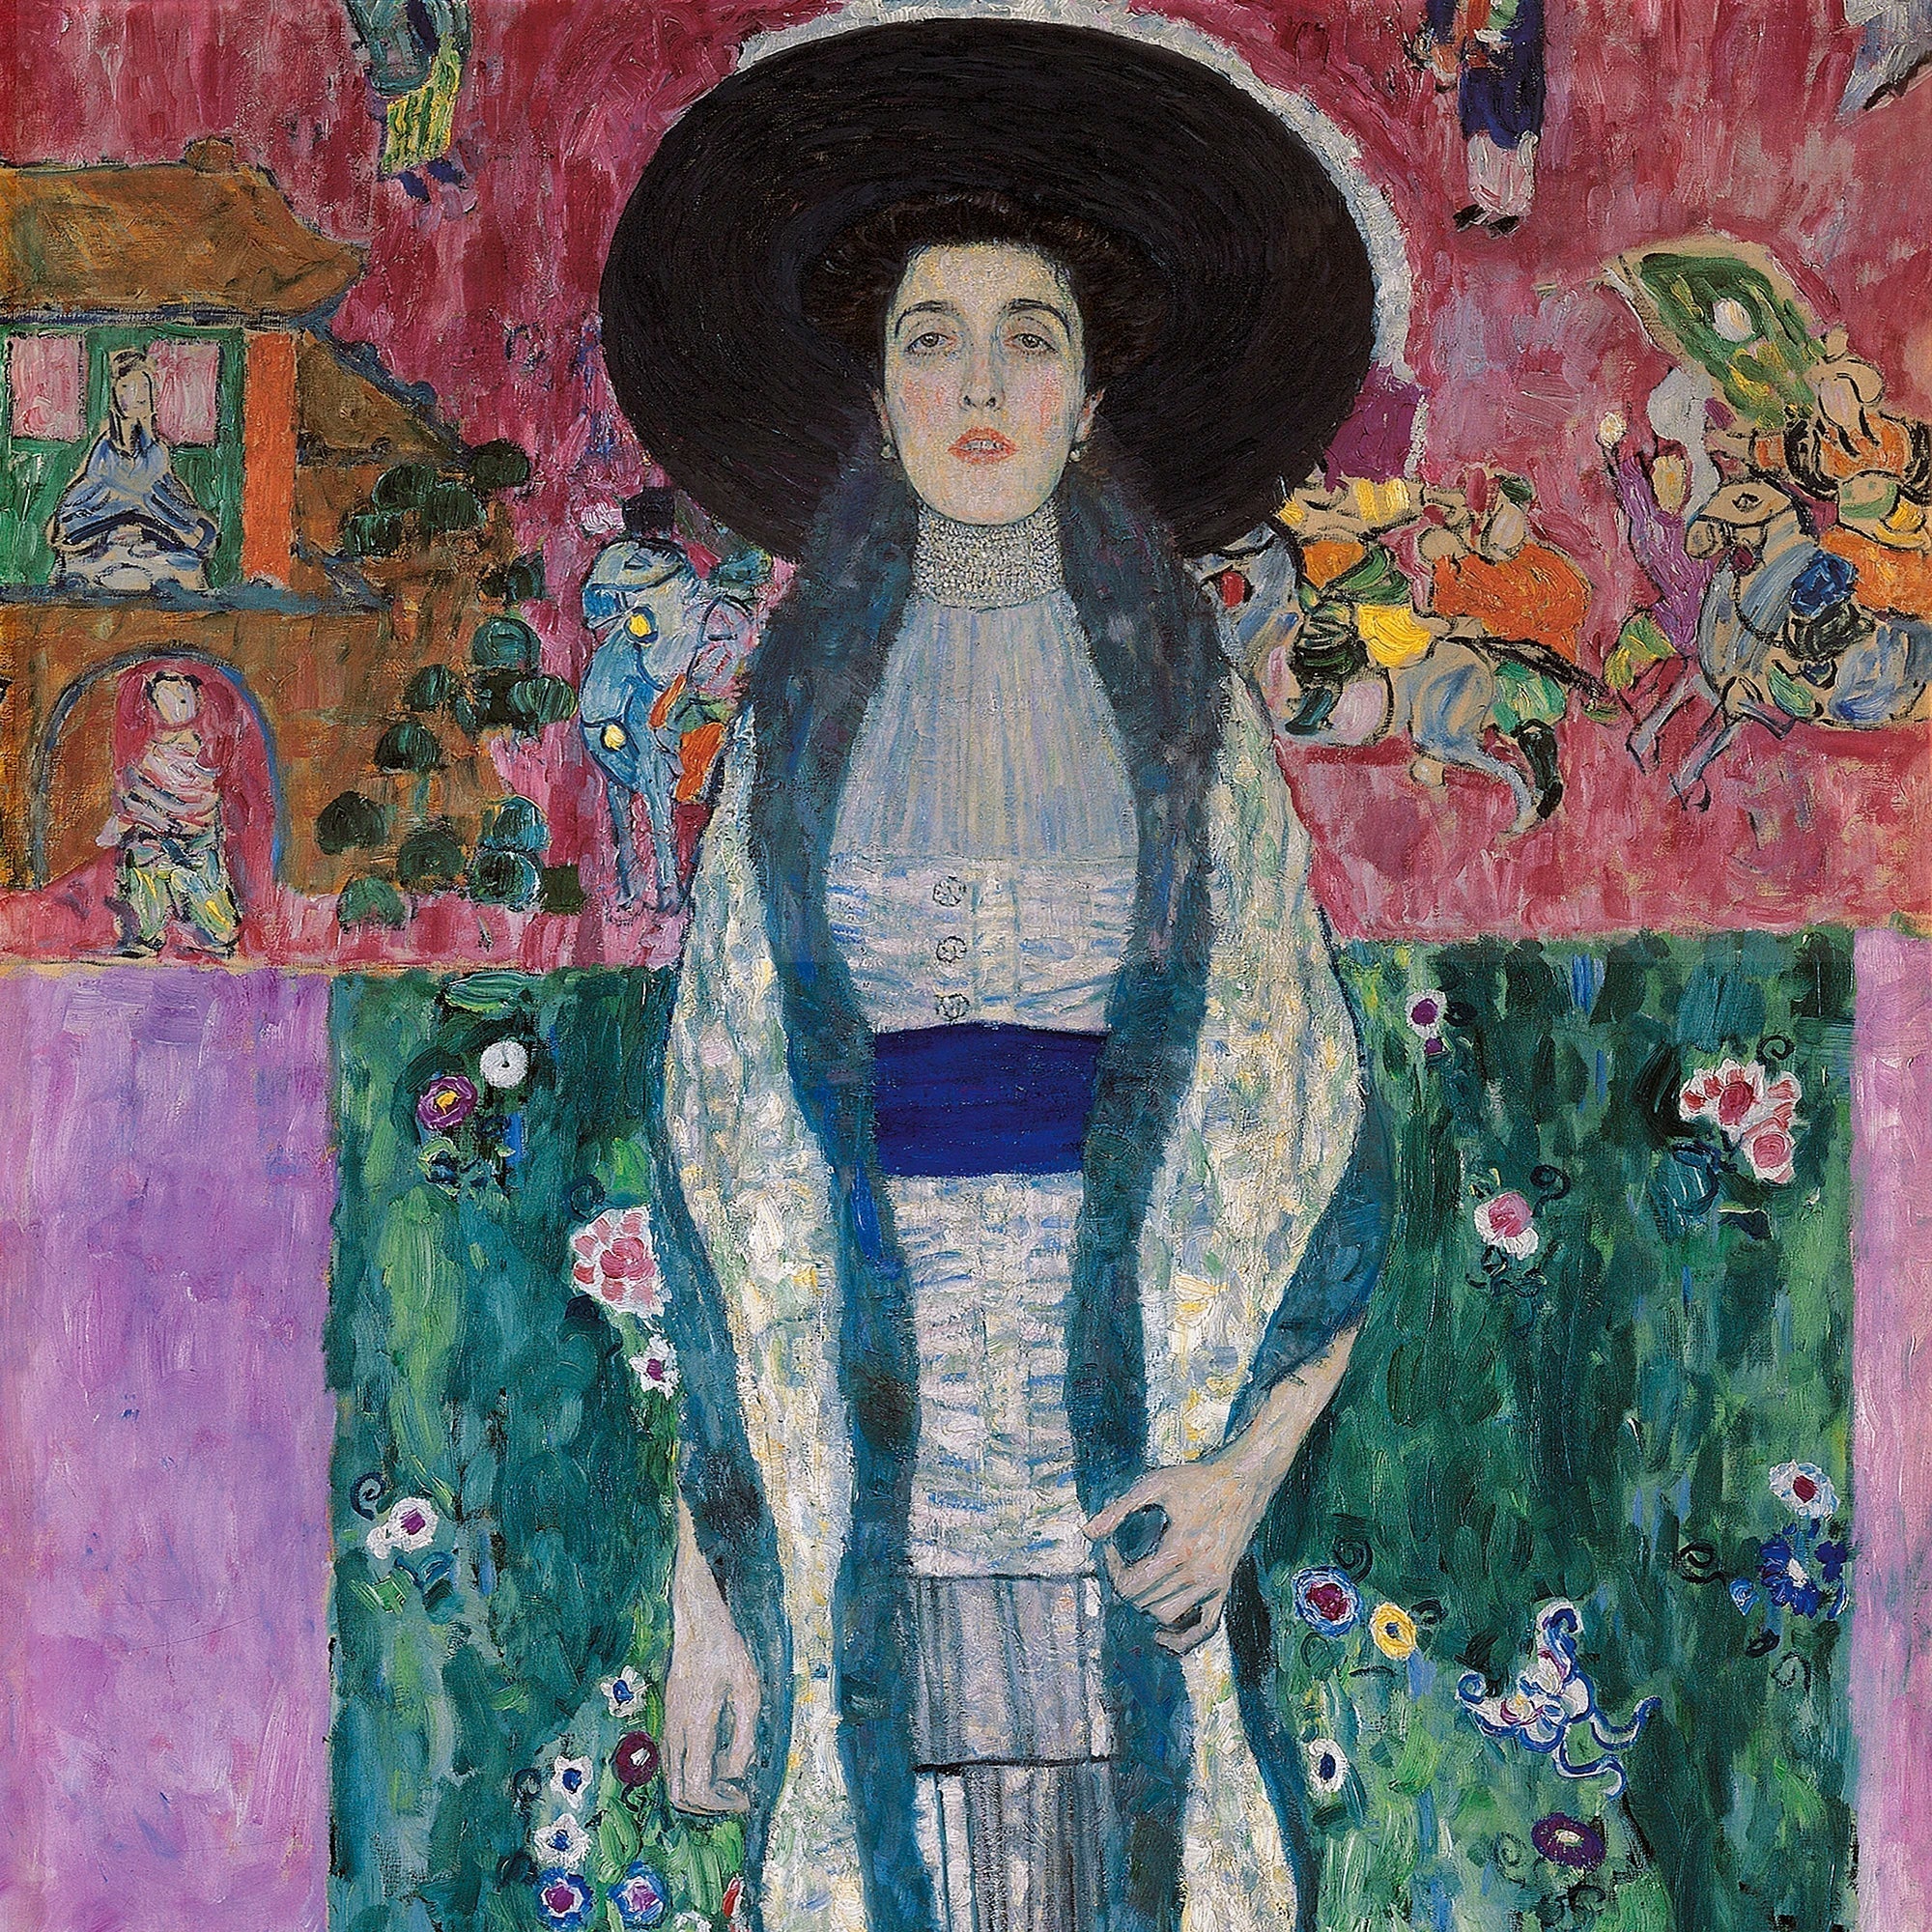 Gustav Klimt: Master of Contrast and Symbolism